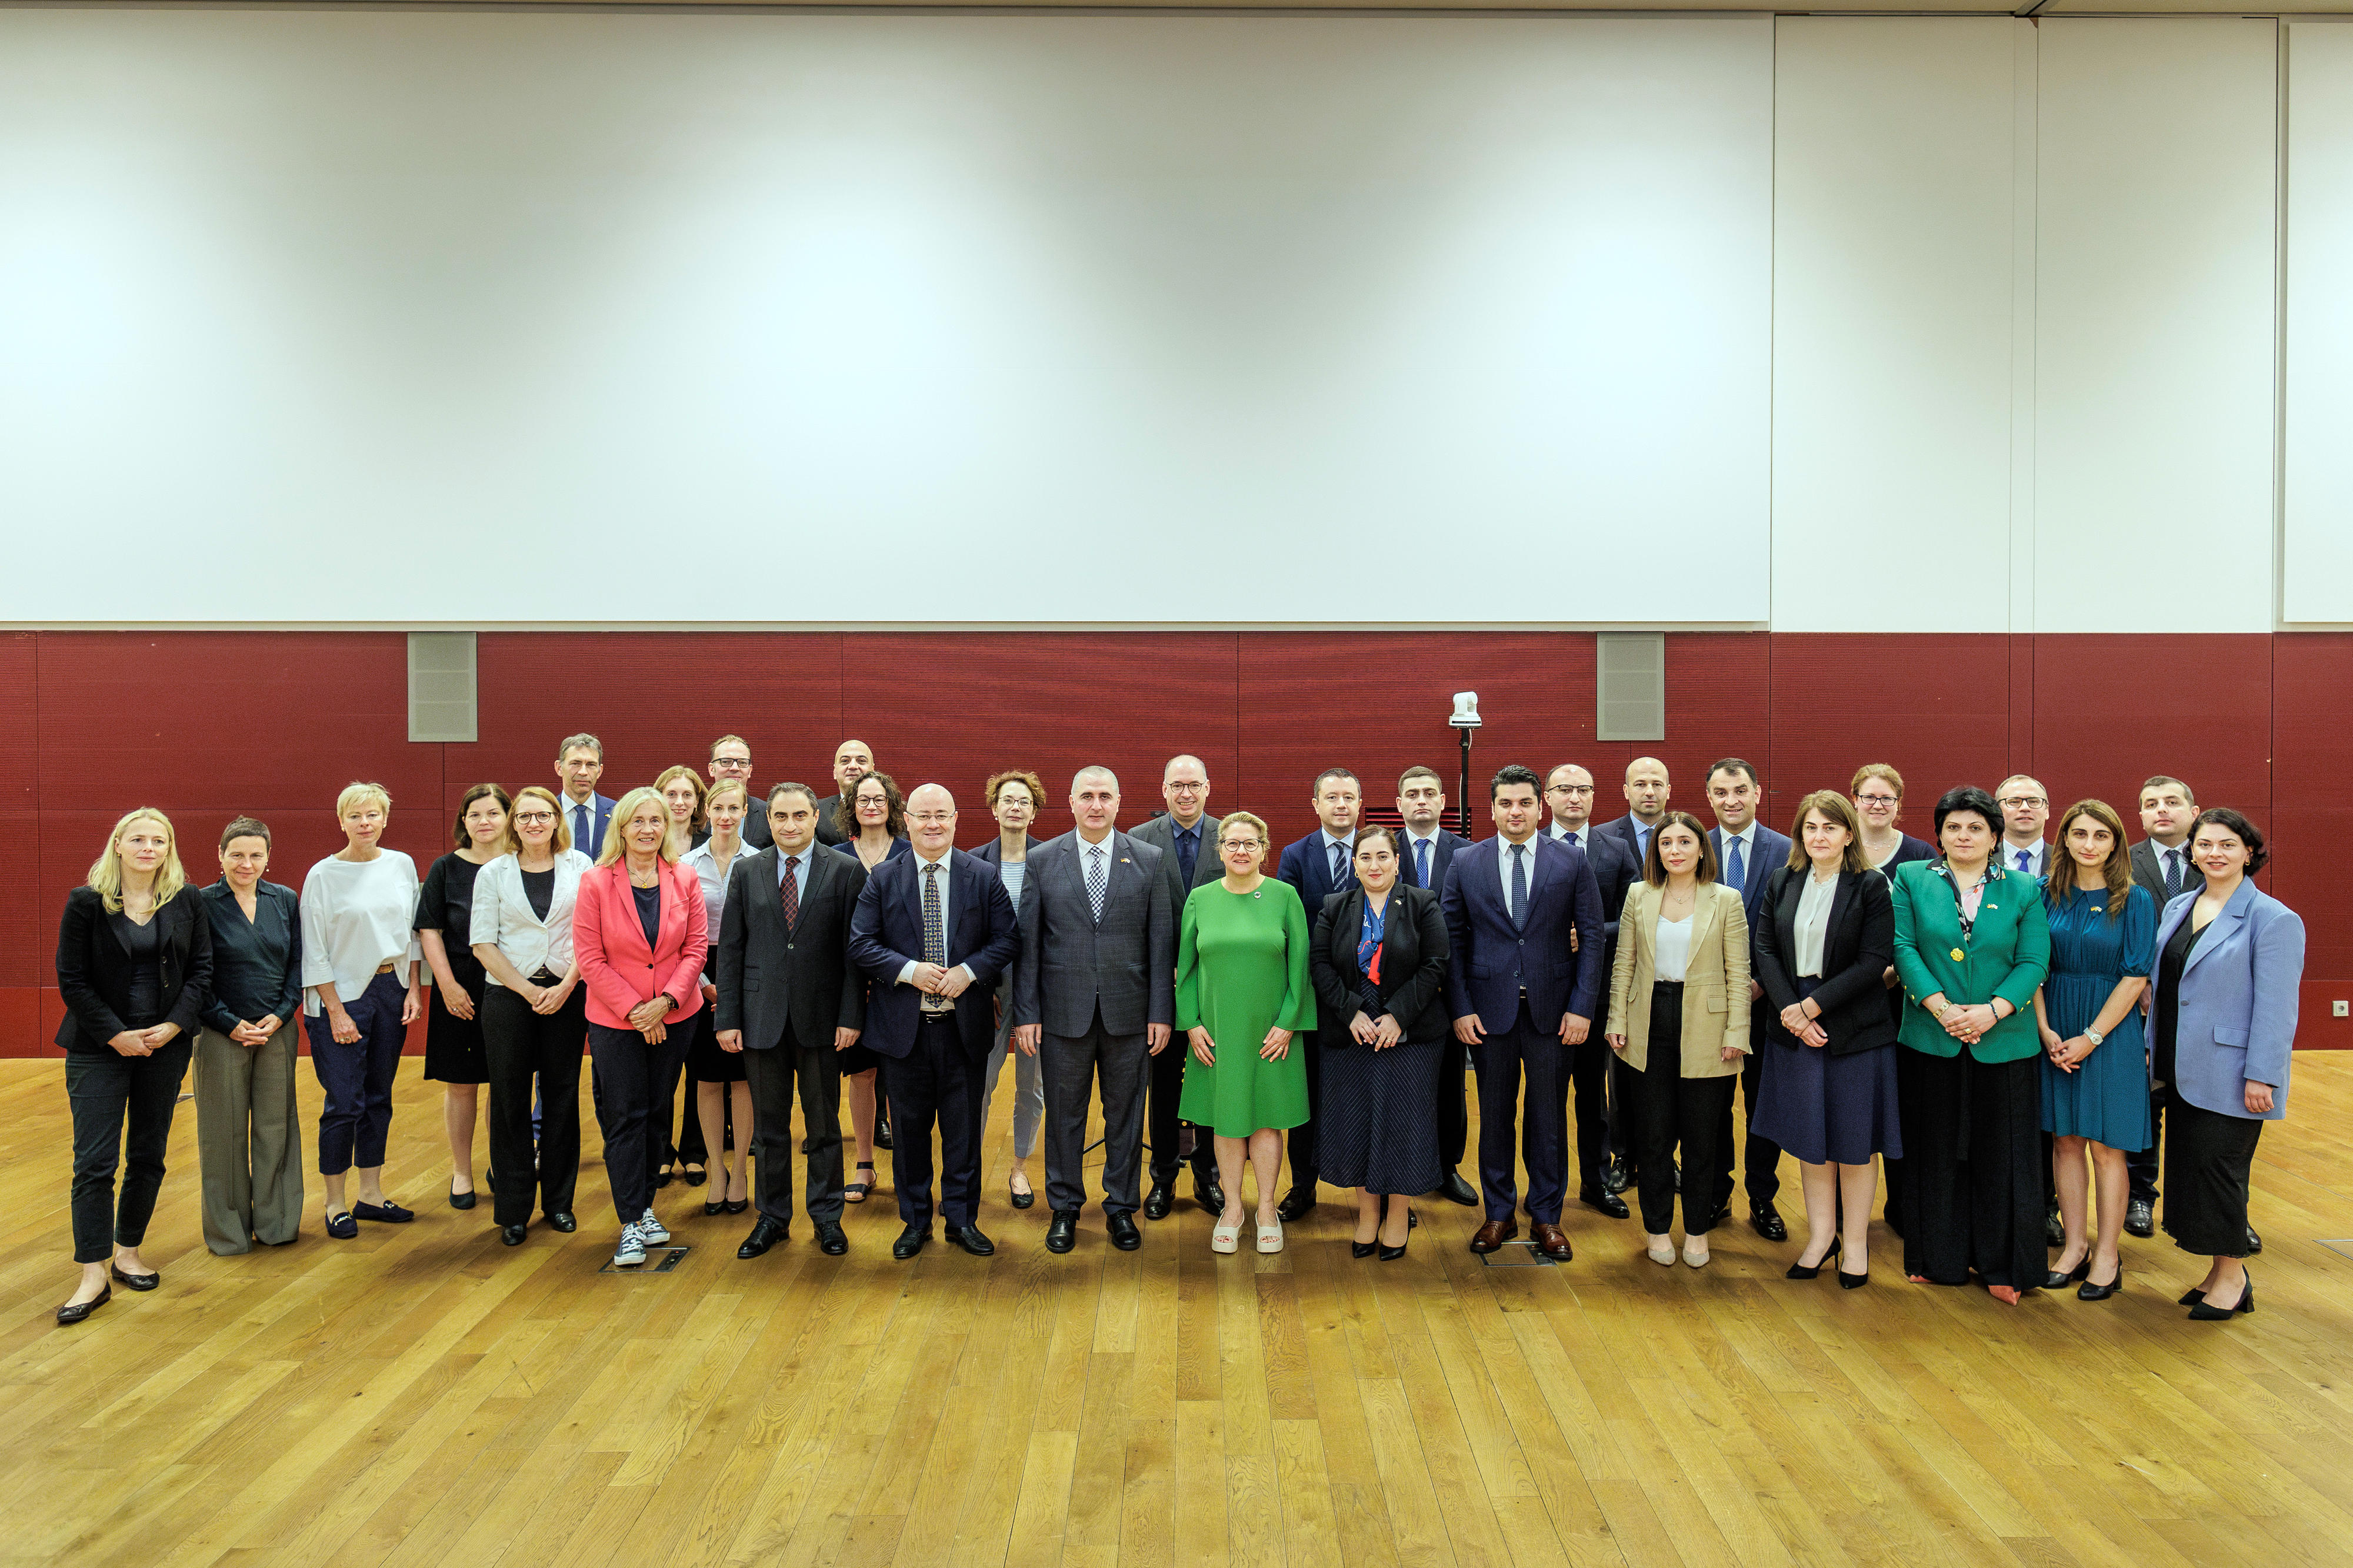 Familienfoto im Rahmen der Eröffnung der Regierungsverhandlungen mit Georgien im BMZ in Berlin